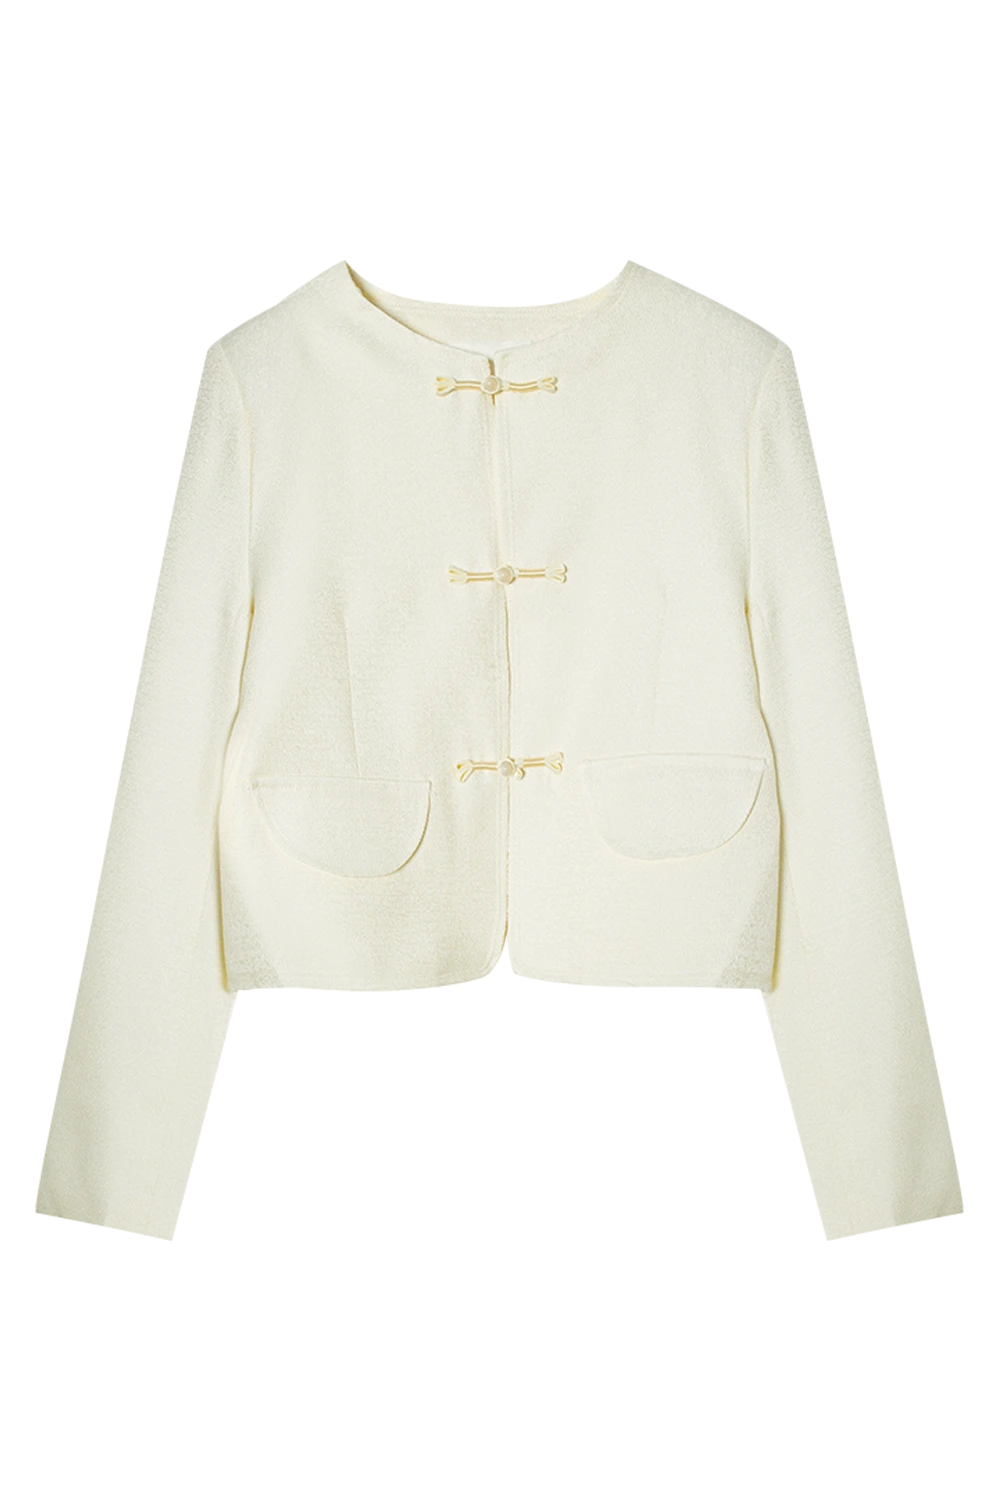 เสื้อแจ็คเก็ตครอป Bouclé ที่มีพื้นผิวพร้อมตะขอปิดอันเป็นเอกลักษณ์